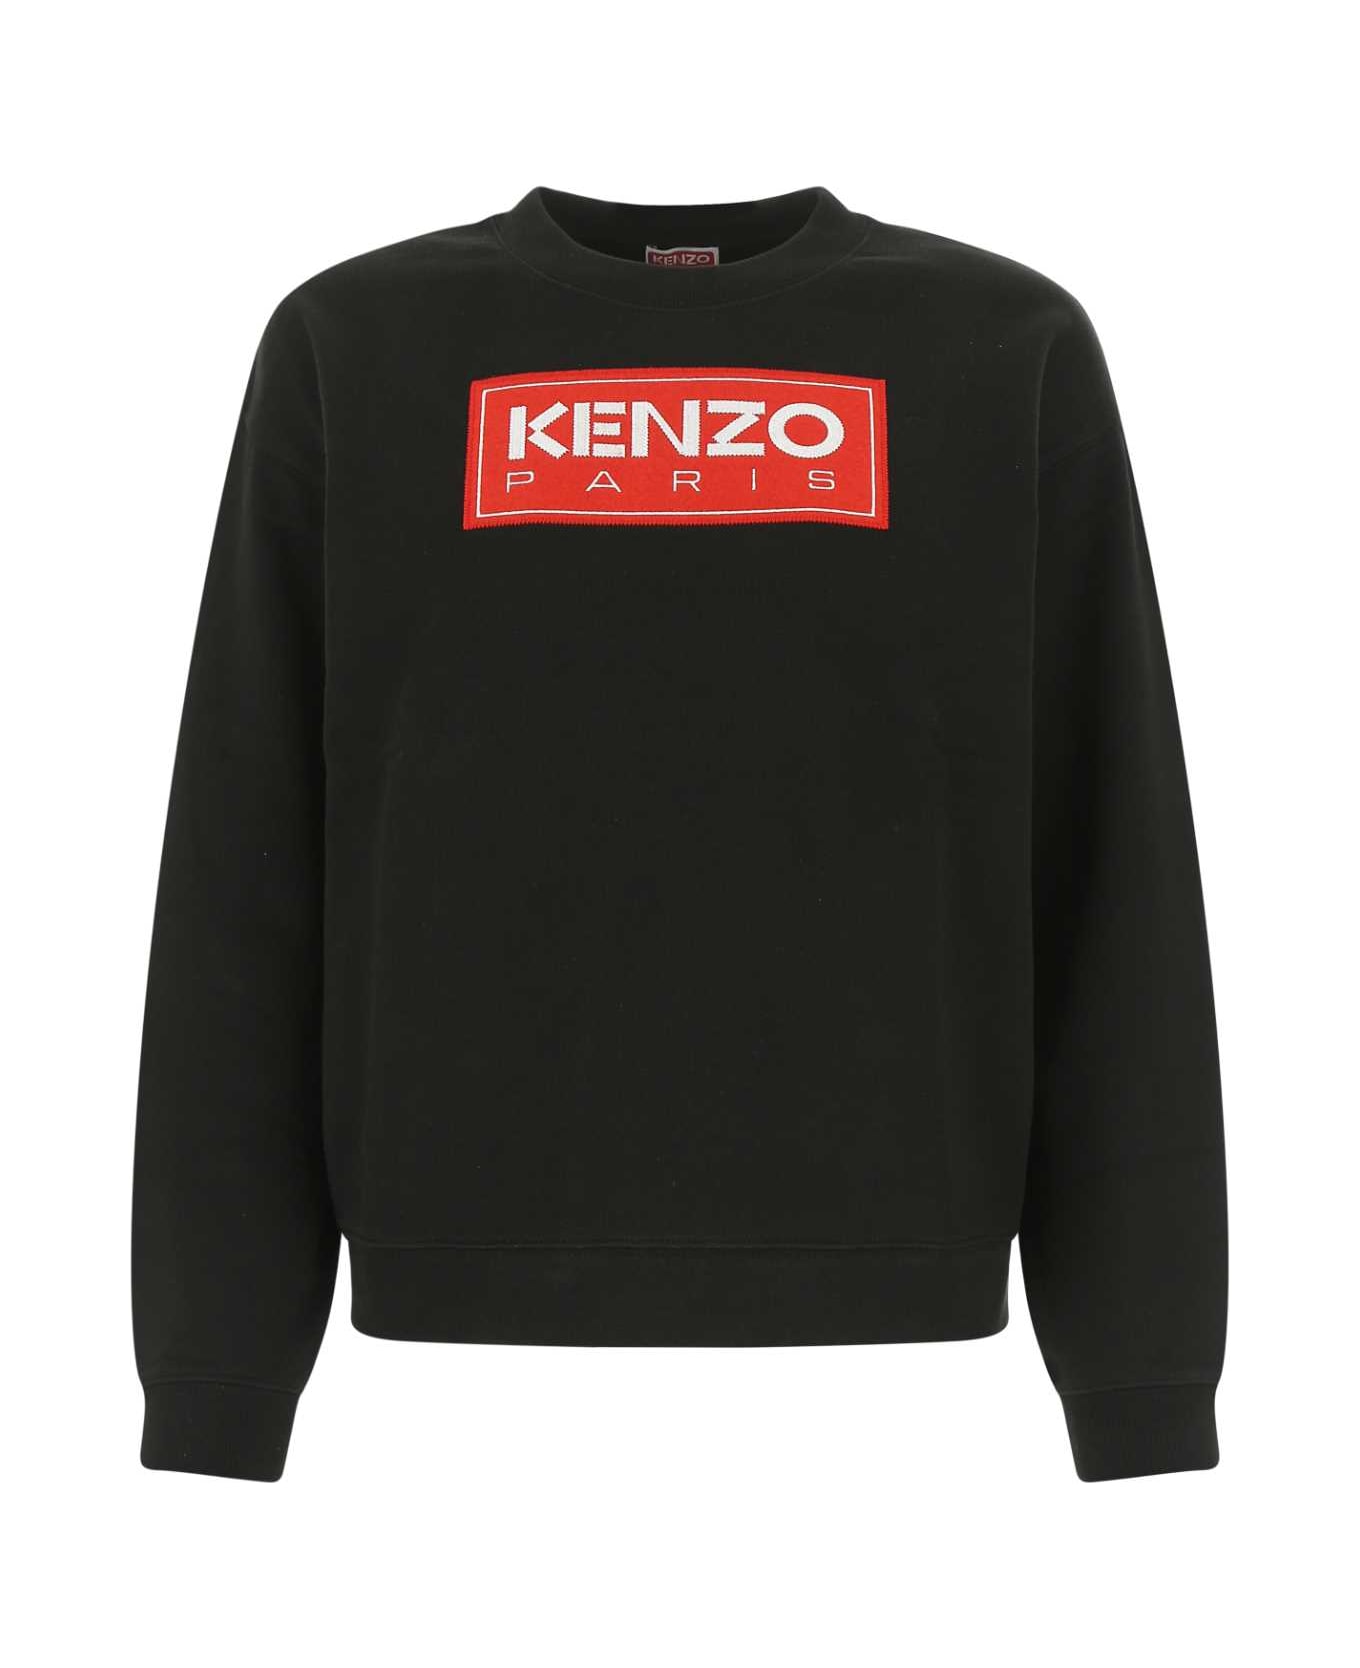 Kenzo Black Cotton Oversize Sweatshirt - 99J